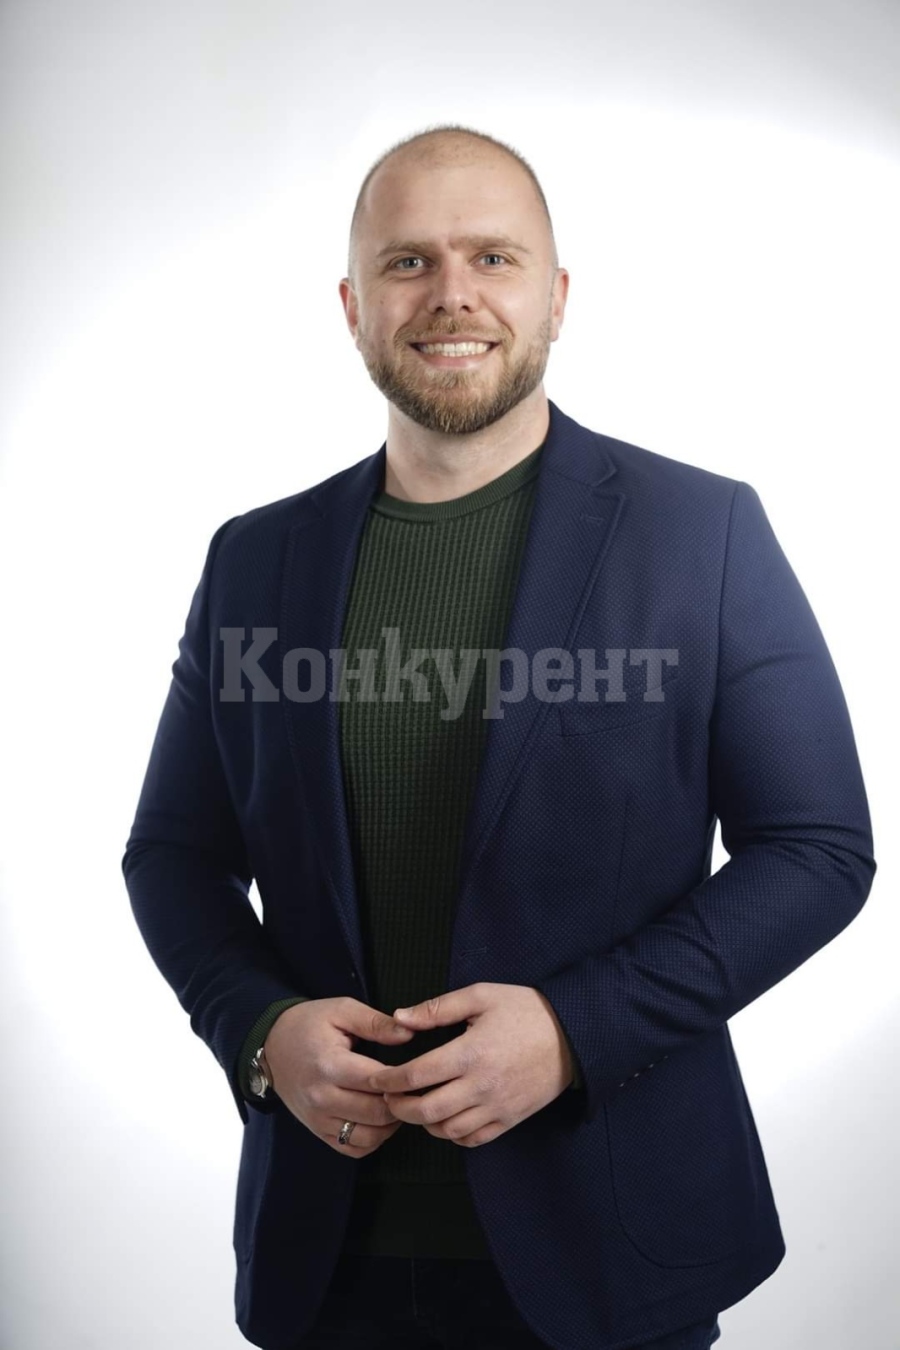 Още една прогноза на „Конкурент“ се сбъдна: Кирил Кунгалов влиза в битката за кмет на Враца